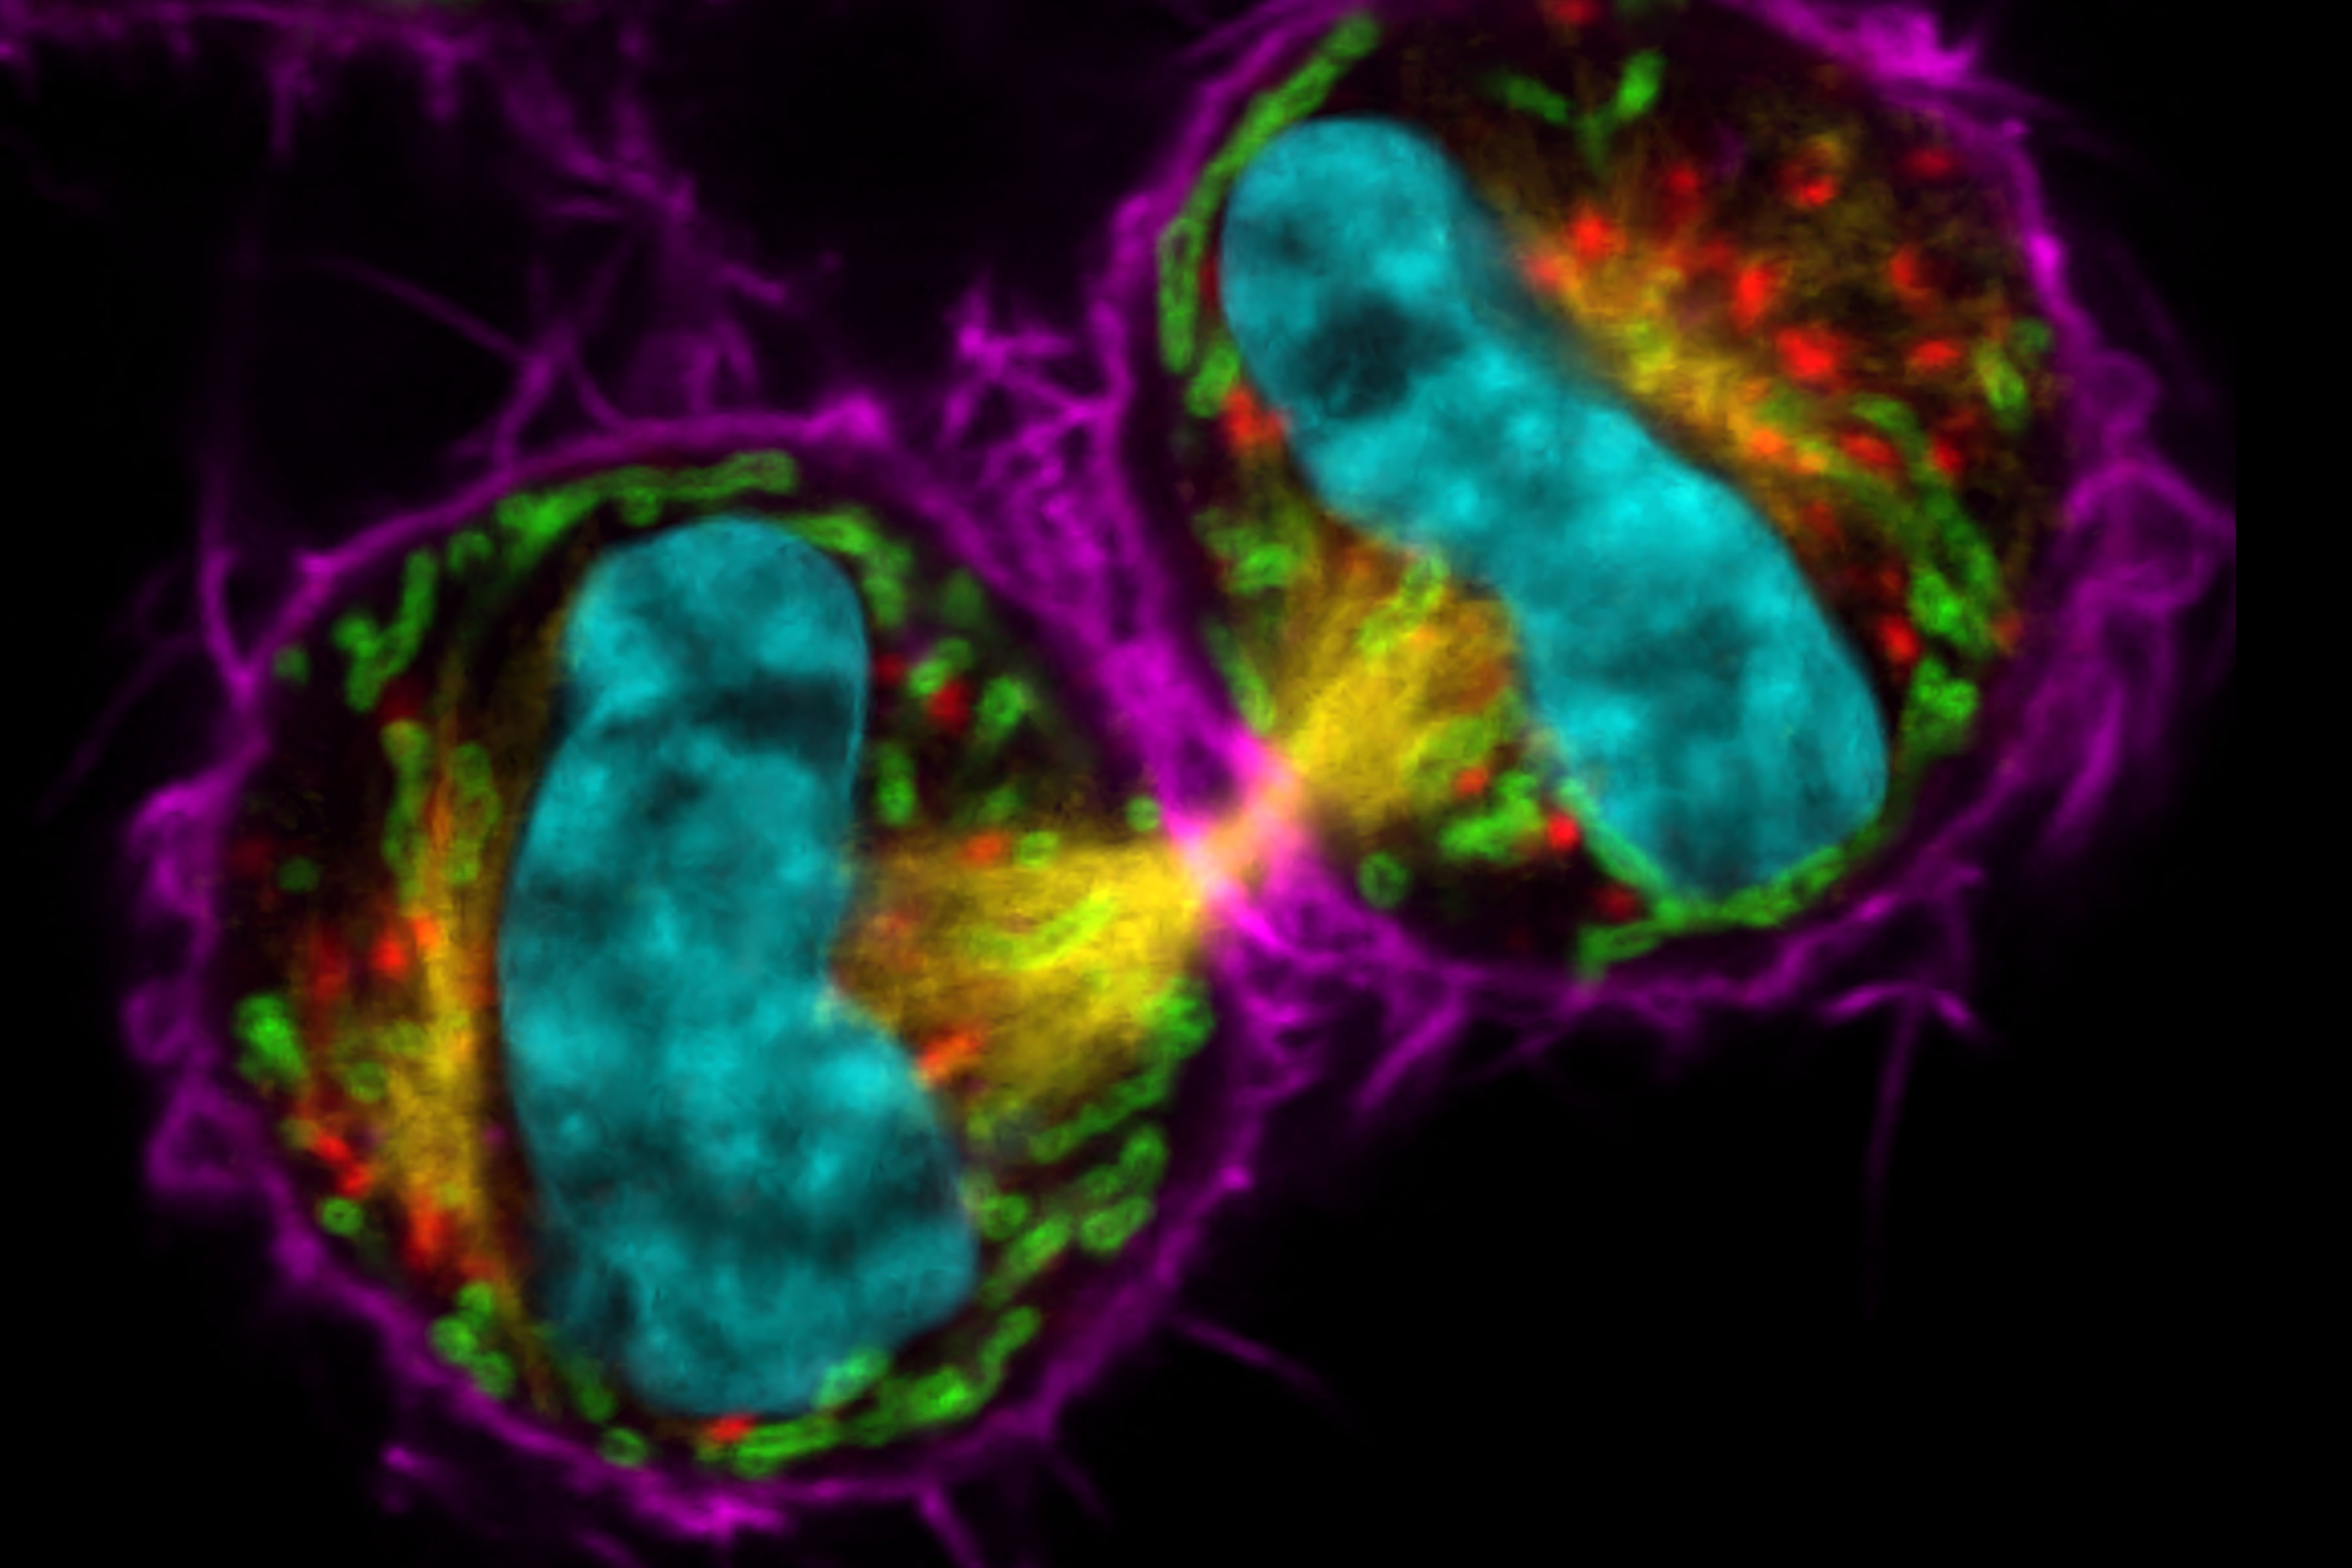 有丝分裂的 COS7 有丝分裂细胞。染色质（青色，mCherry）、有丝分裂纺锤体（黄色，EGFP）、高尔基体（红色，Atto647N）、线粒体（绿色，AF532）、肌动蛋白丝（洋红色，SiR700）。 样品提供： 雅娜-多纳（Jana Döhner）博士和乌尔斯-齐格勒（Urs Ziegler）博士。表达 mCherry 的细胞由 Daniel Gehrlich 惠赠。SiR 由 Spirochrome 惠赠。